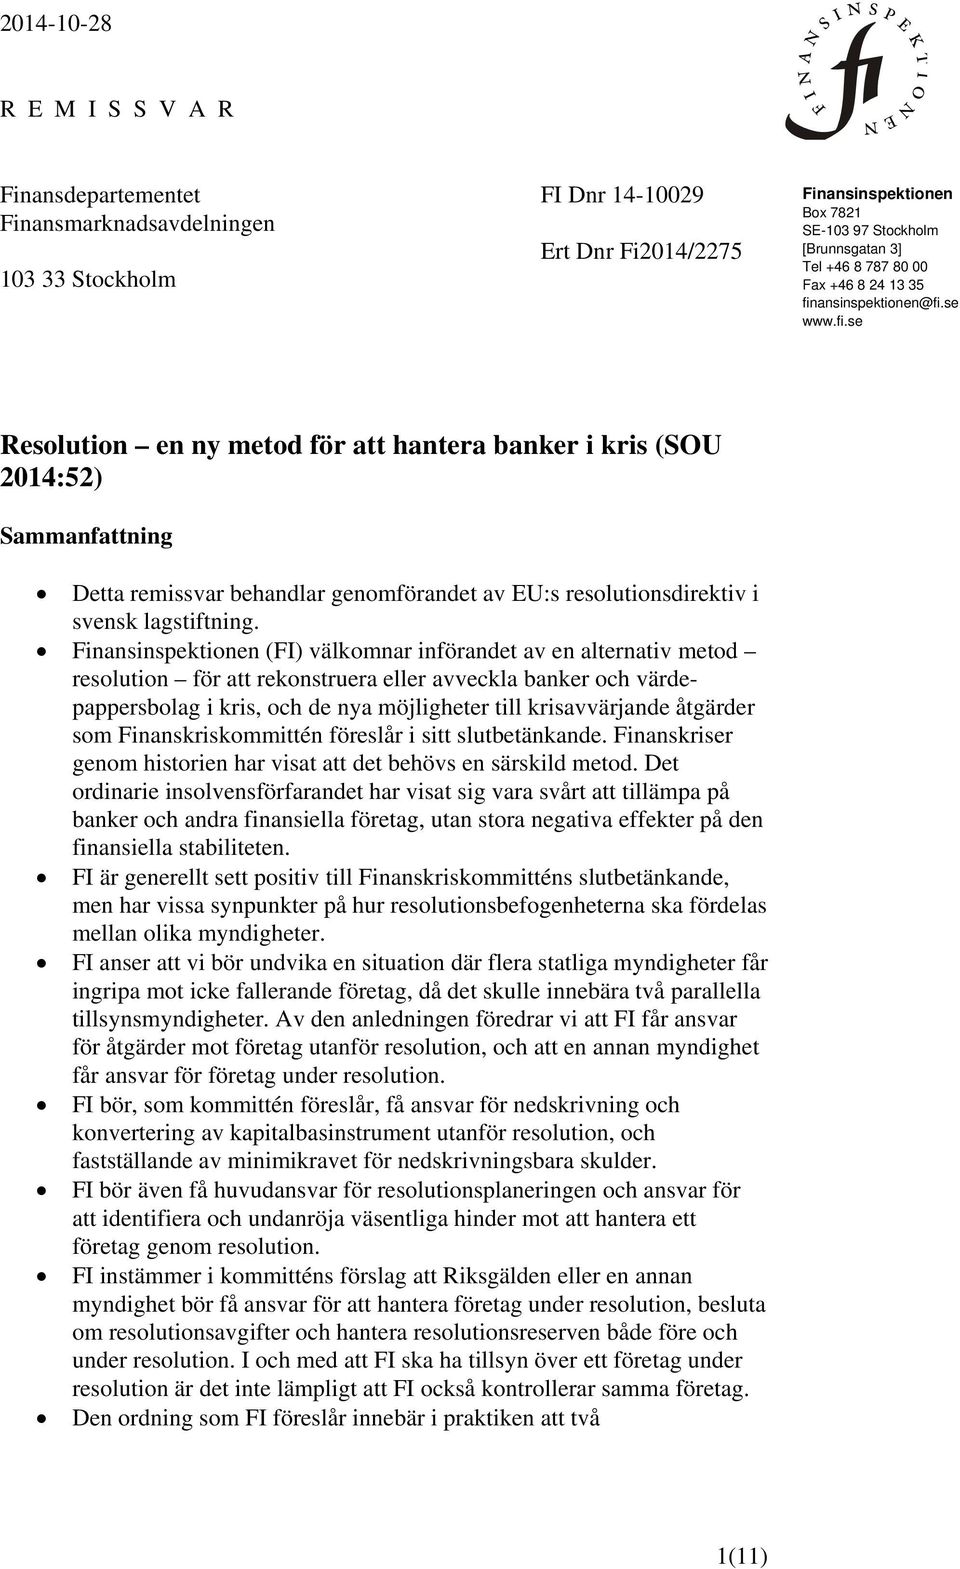 ansinspektionen@fi.se www.fi.se Resolution en ny metod för att hantera banker i kris (SOU 2014:52) Sammanfattning Detta remissvar behandlar genomförandet av EU:s resolutionsdirektiv i svensk lagstiftning.